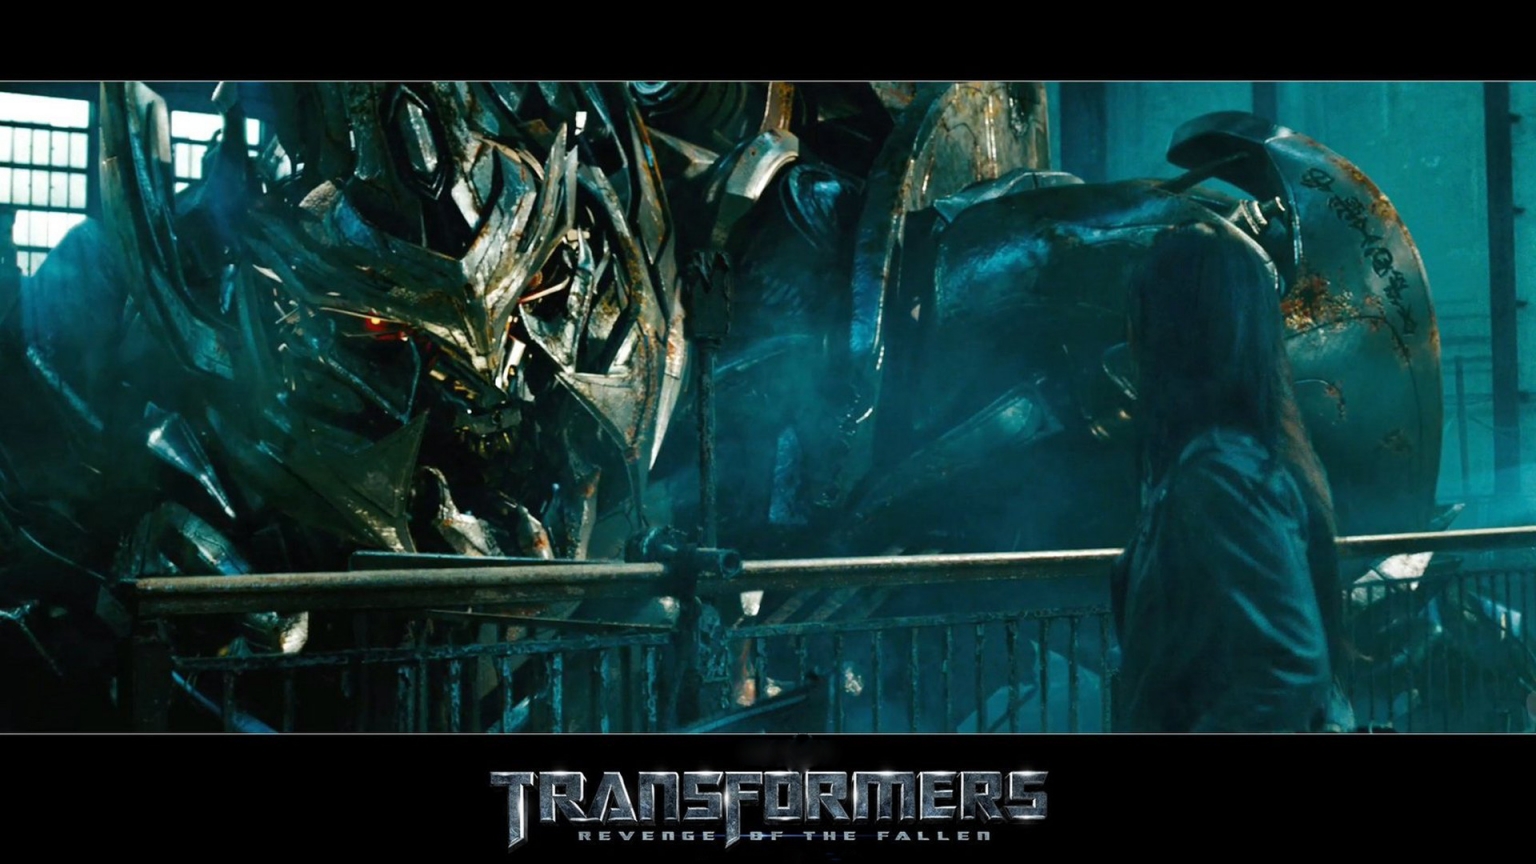 Transformers Revenge of the Fallen for 1536 x 864 HDTV resolution